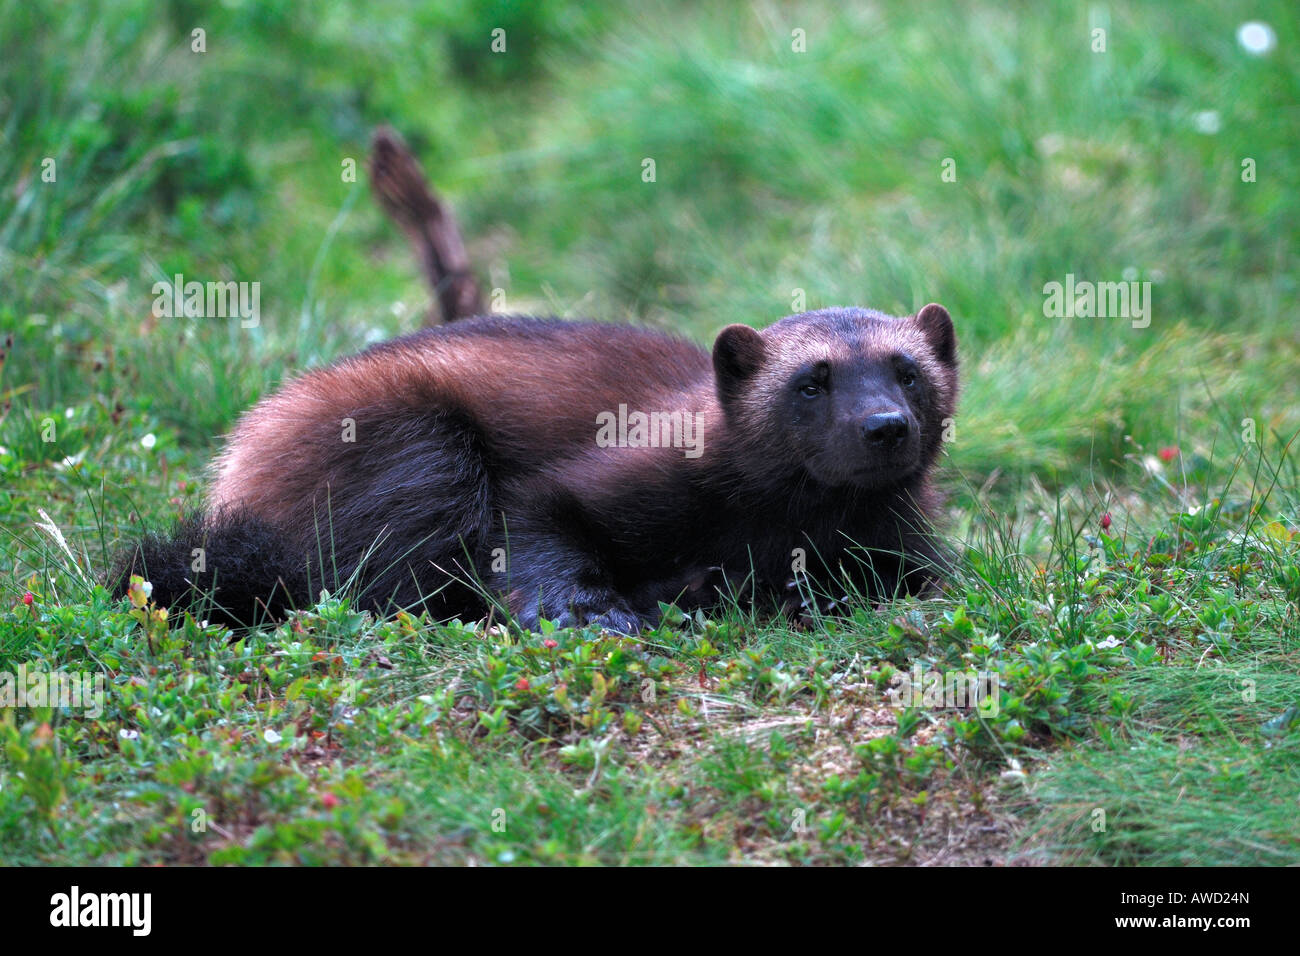 Wolverine (Gulo gulo), ritratto, Norvegia settentrionale, Scandinavia, Europa Foto Stock